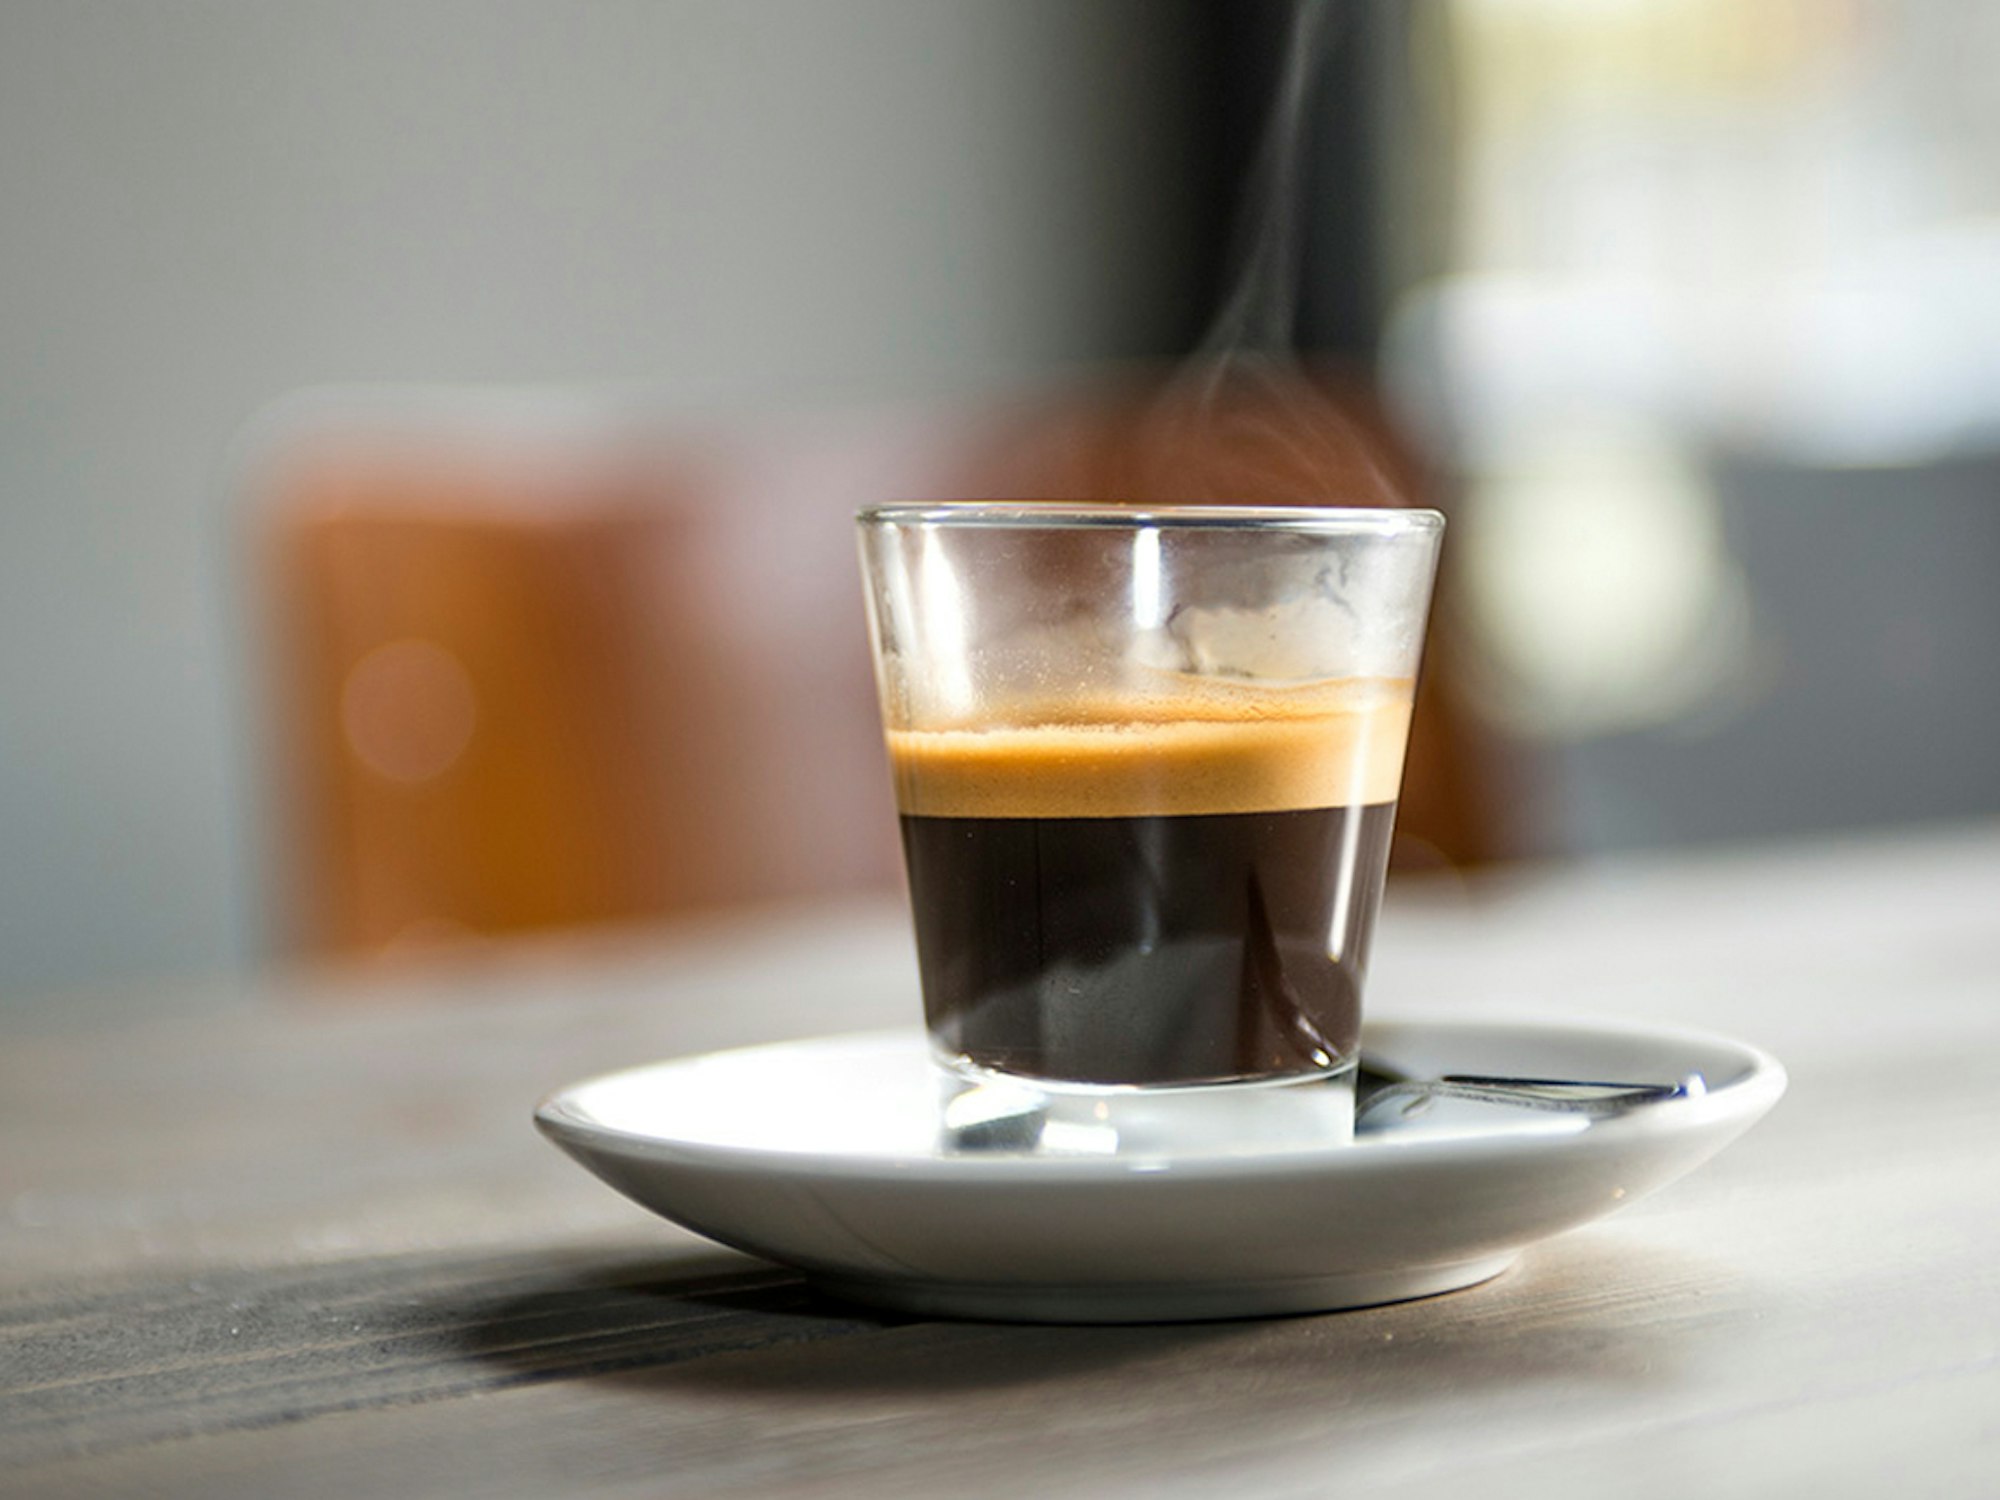 Dieses undatierte Bild zeigt eine dampfende Tasse Kaffee.